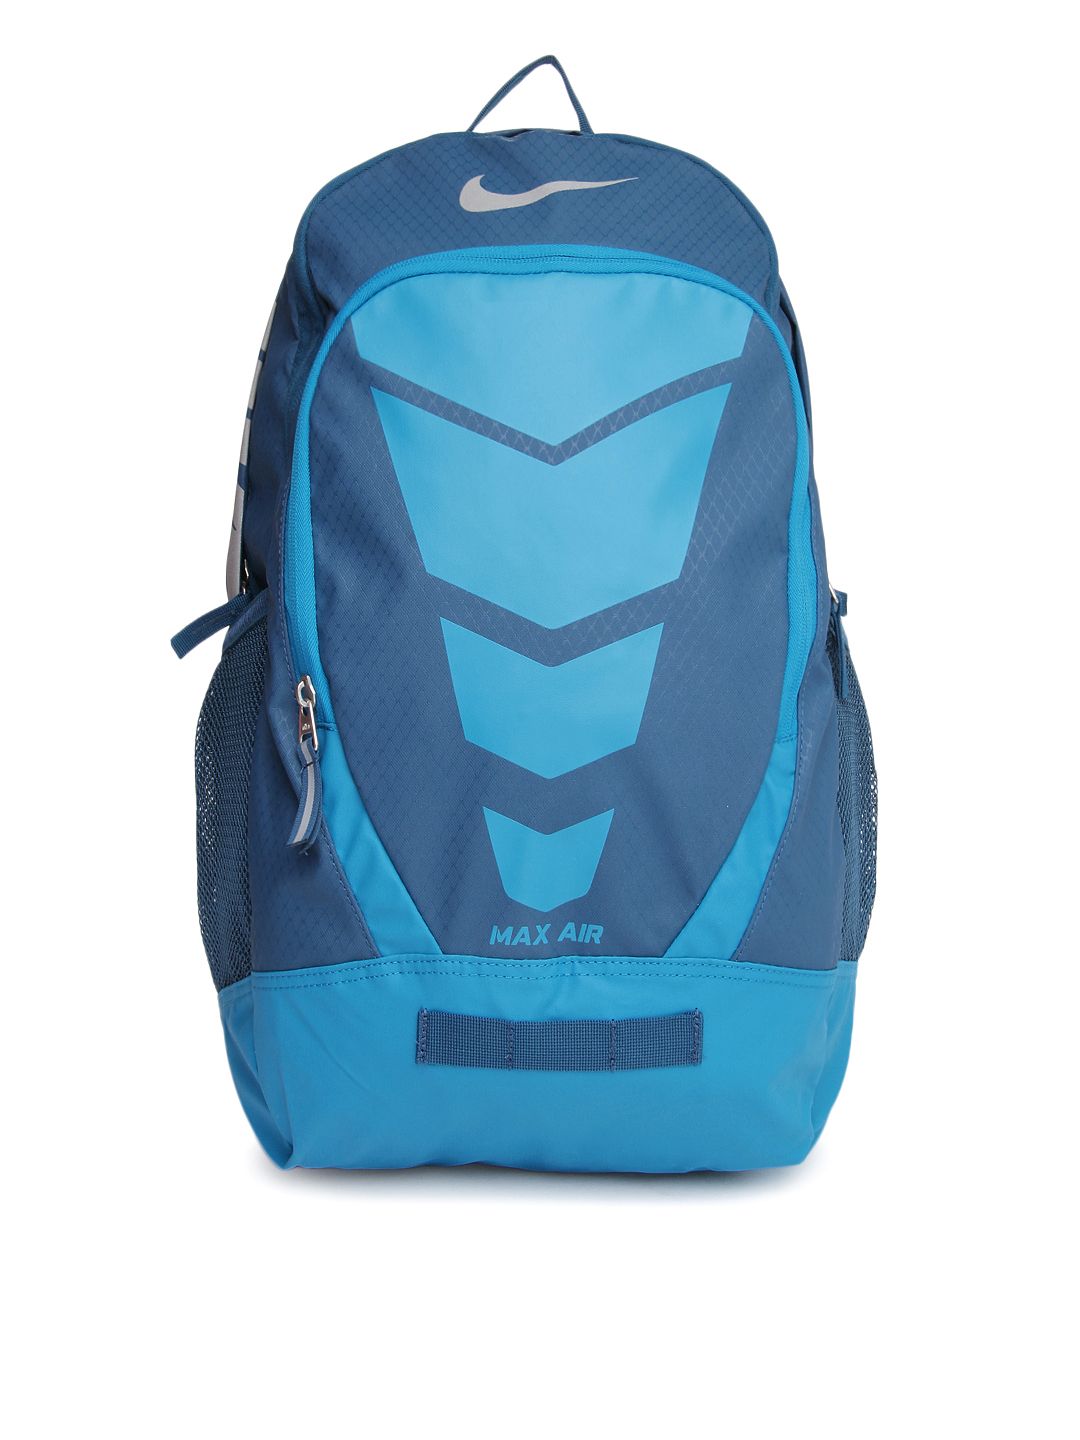 nike air max backpack blue